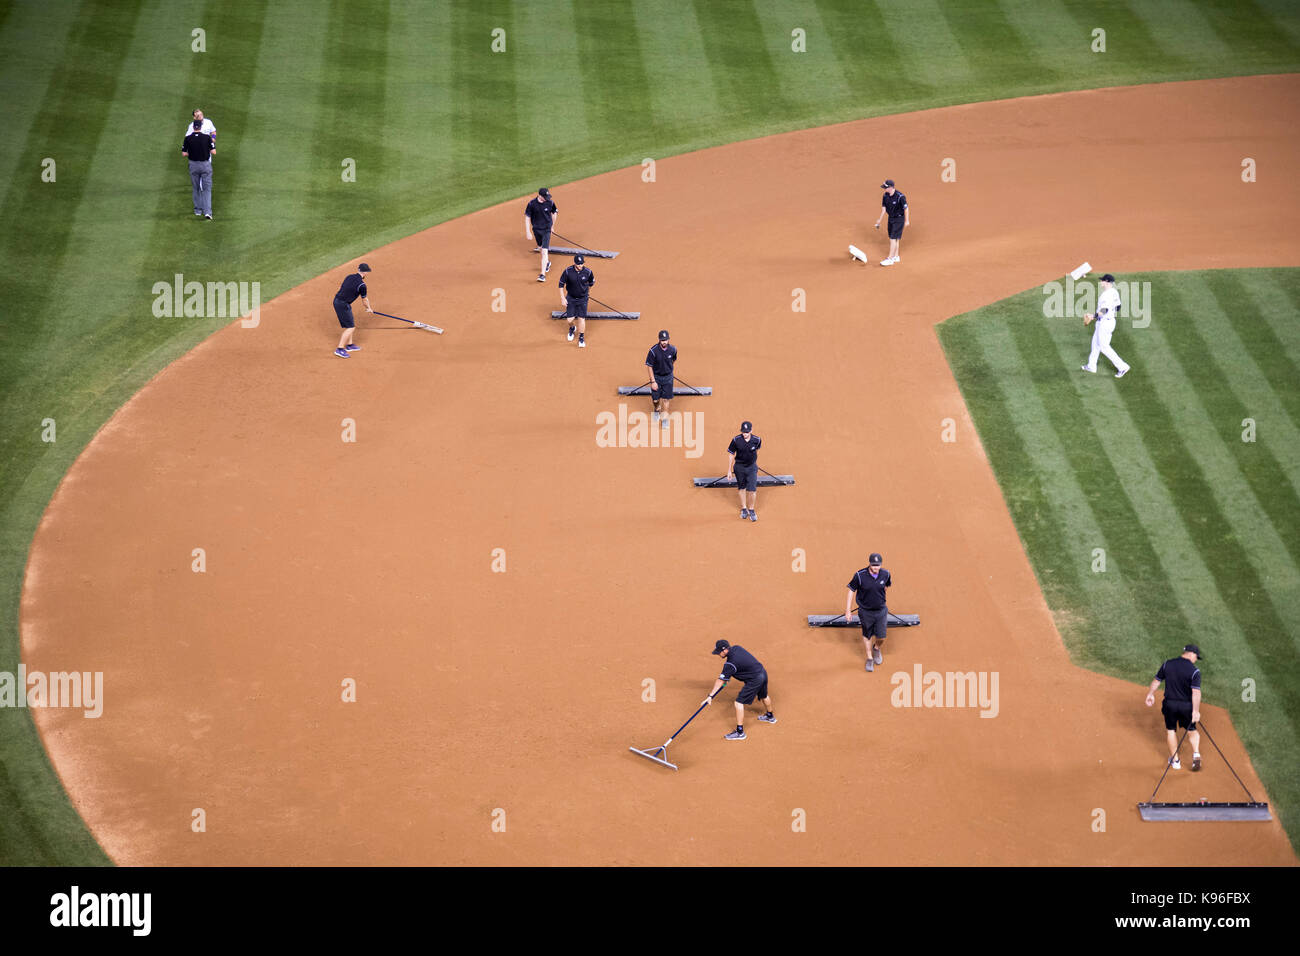 Denver, Colorado - la cuadrilla novios el infield entre innings de un juego de béisbol en el Coors Field. Foto de stock